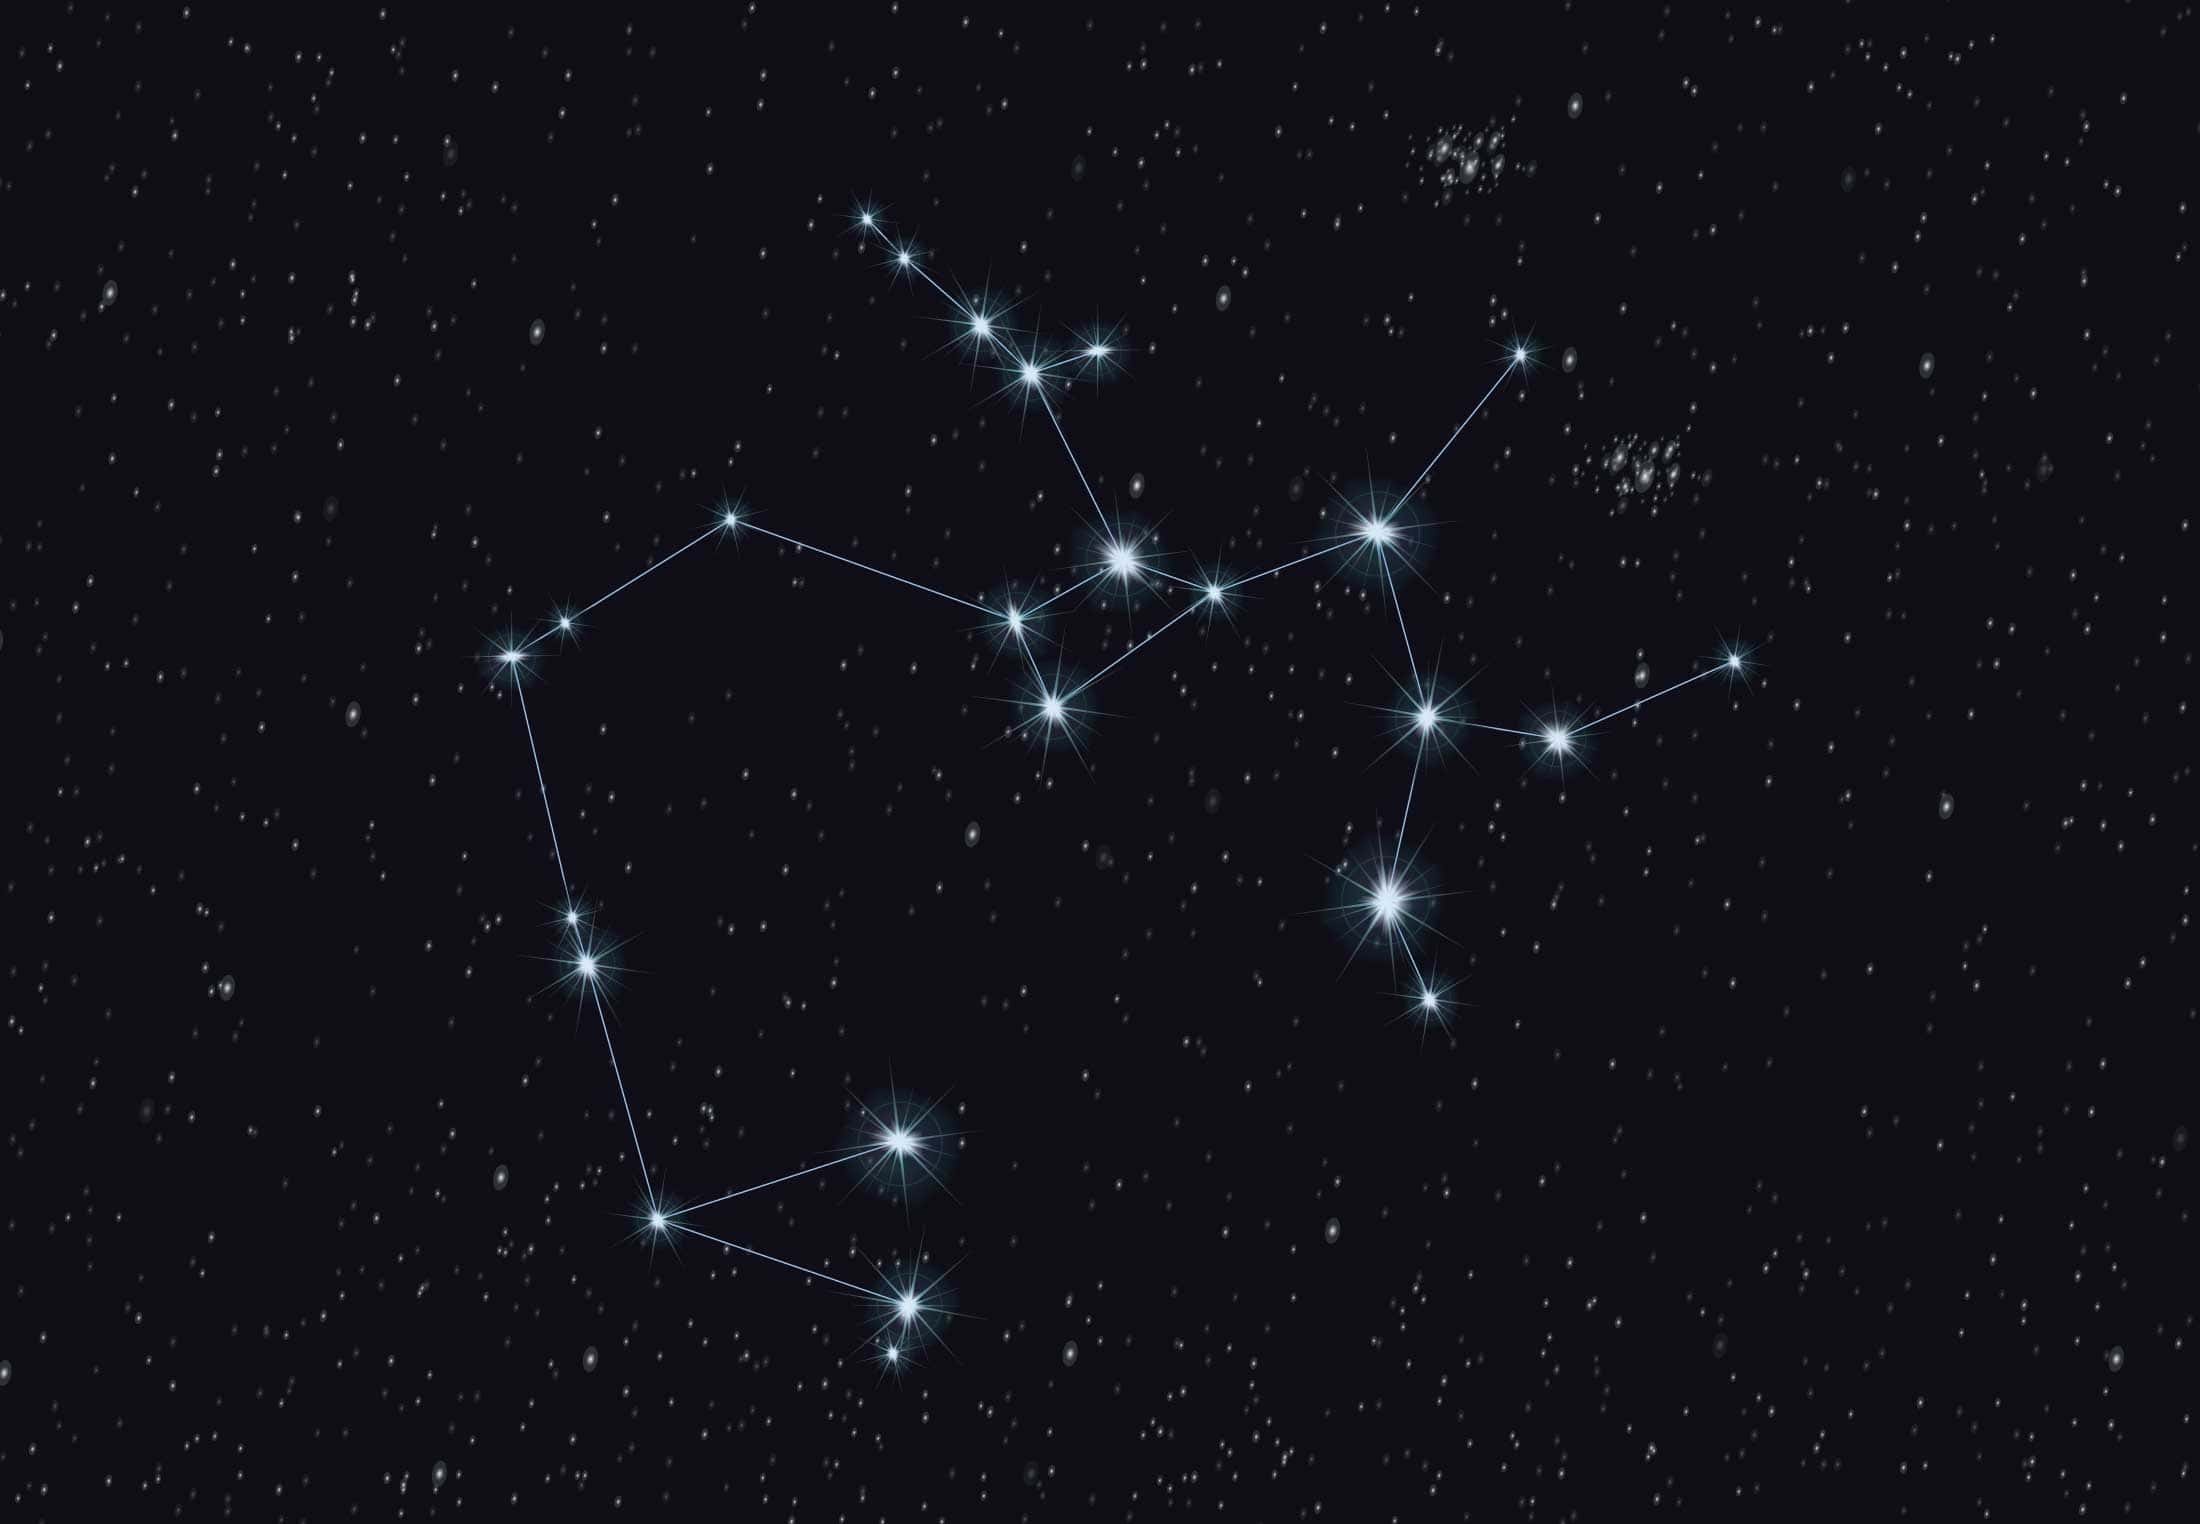 Een sterrenhemel is voorzien van een sterrenbeeld met zichtbare lijnen die de sterren met elkaar verbinden en zo een duidelijk patroon vormen, dat doet denken aan een pijl die door de duisternis schiet, alsof deze uit een onzichtbare boog is geschoten.